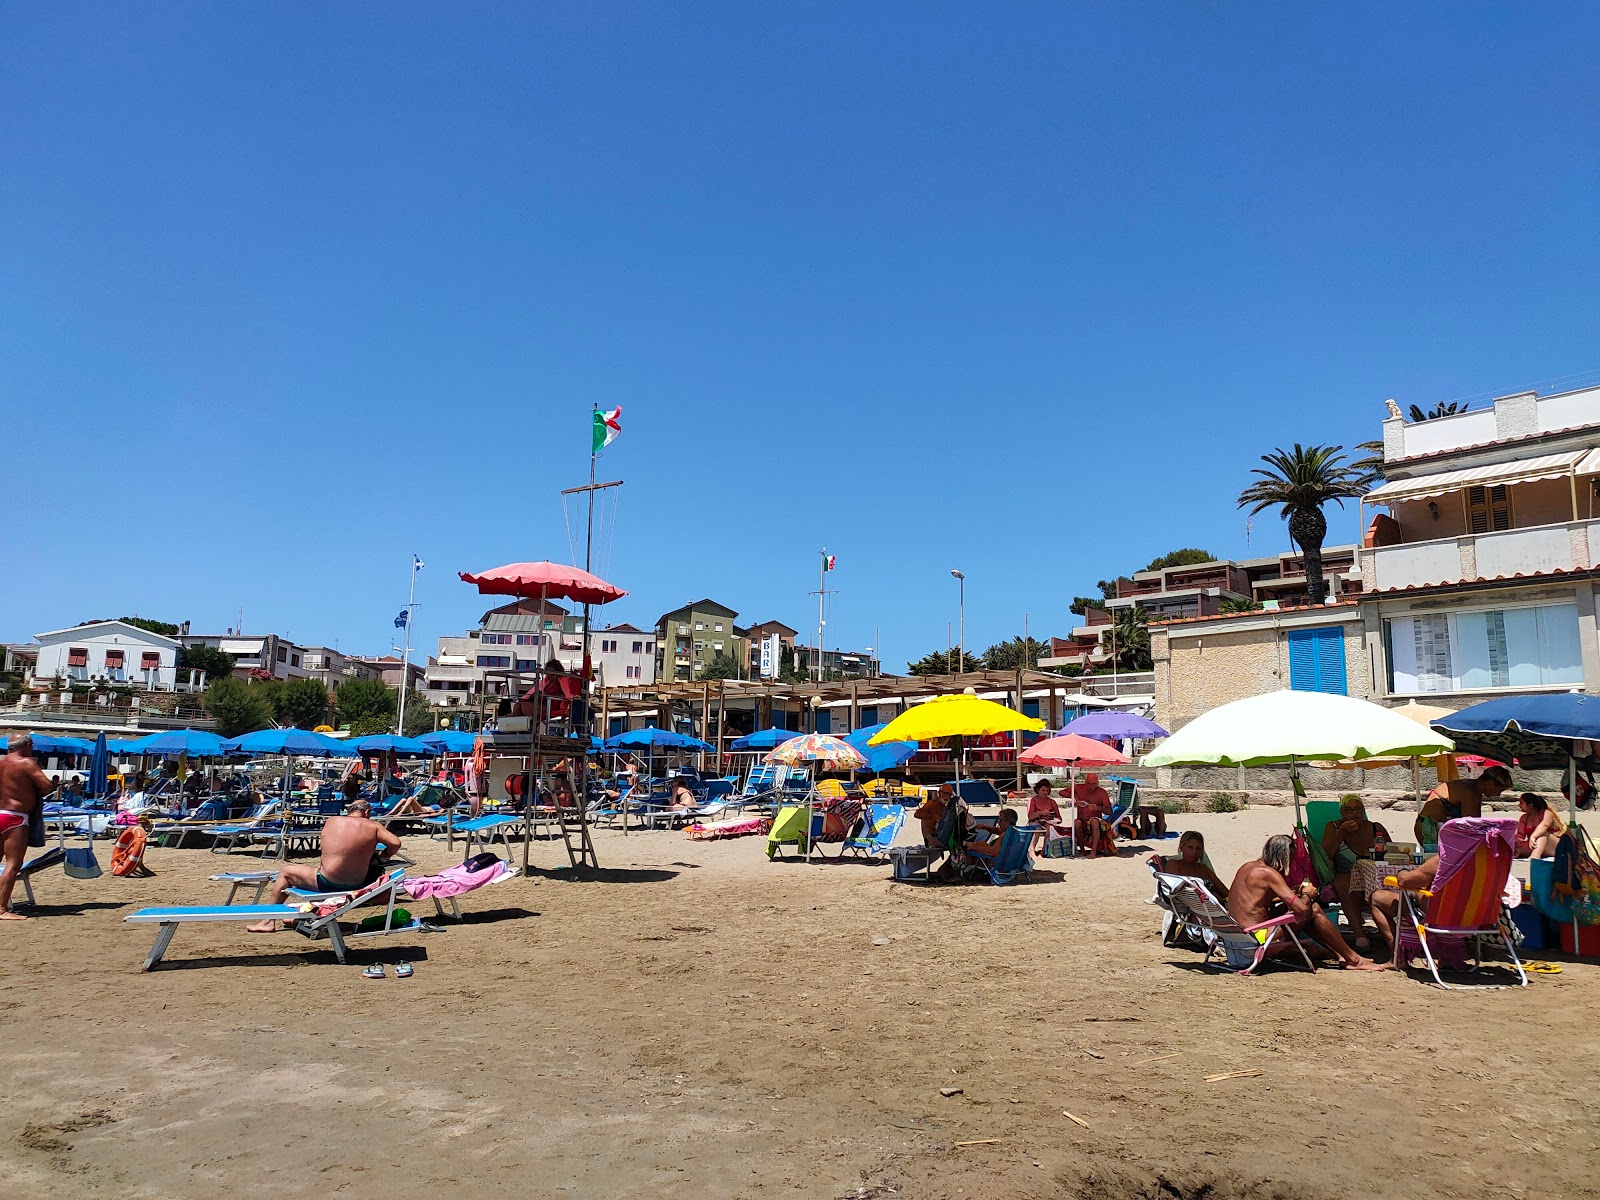 Foto av Spiaggia Salivoli och bosättningen